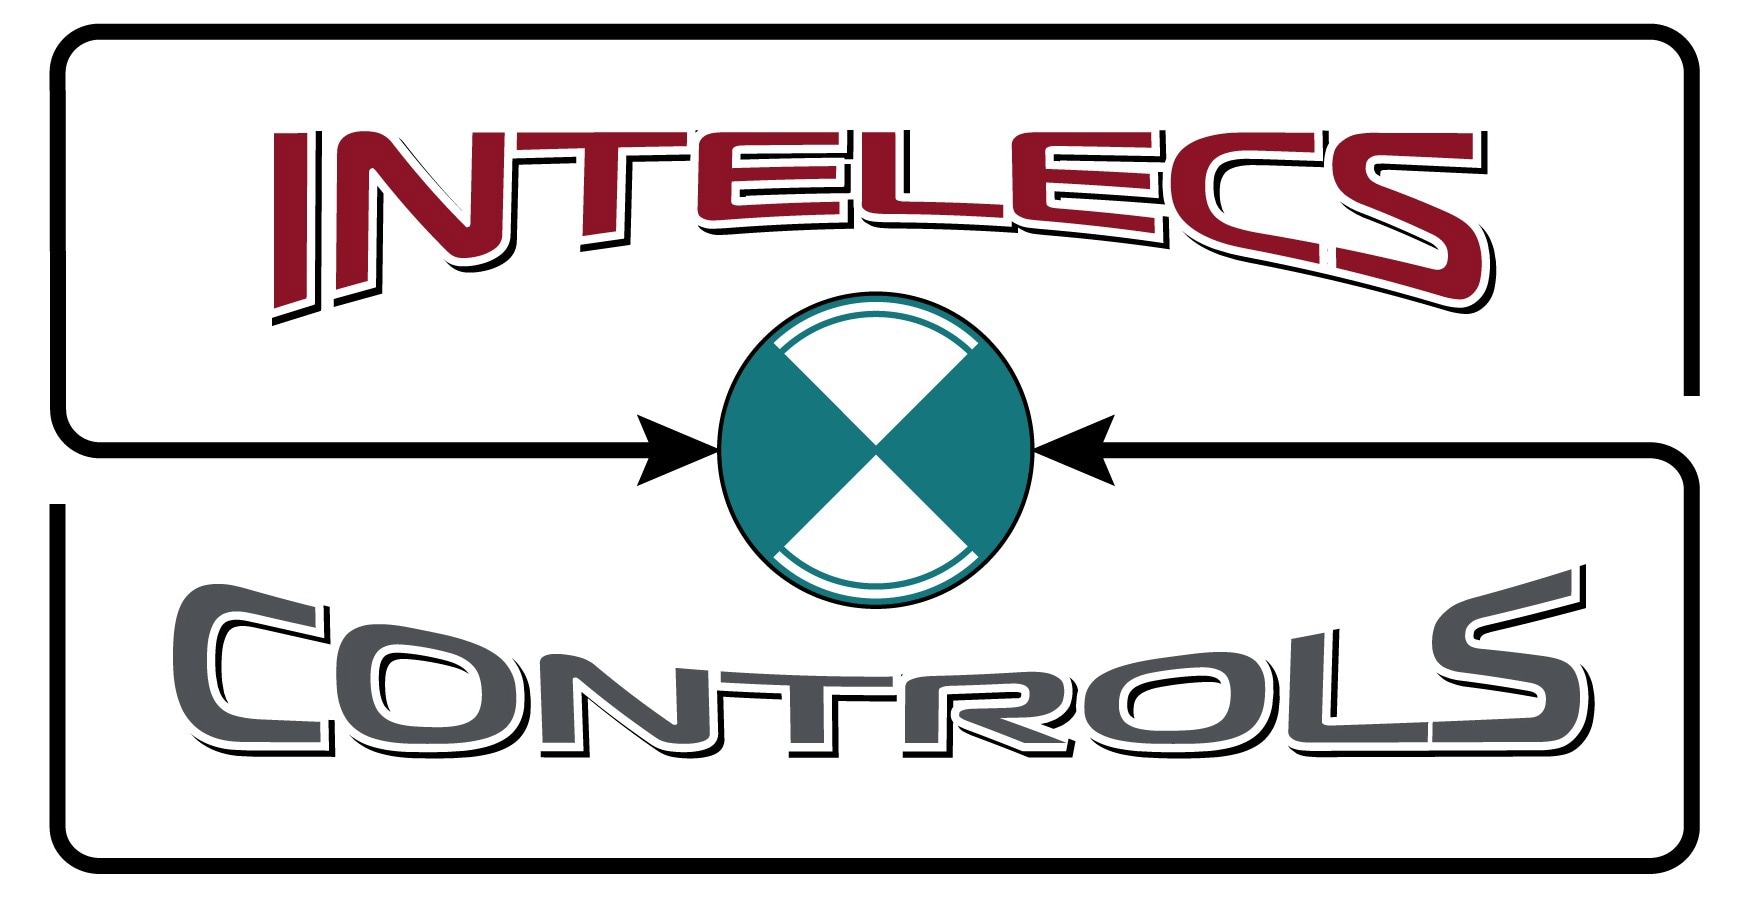 Intelecs Controls Inc.